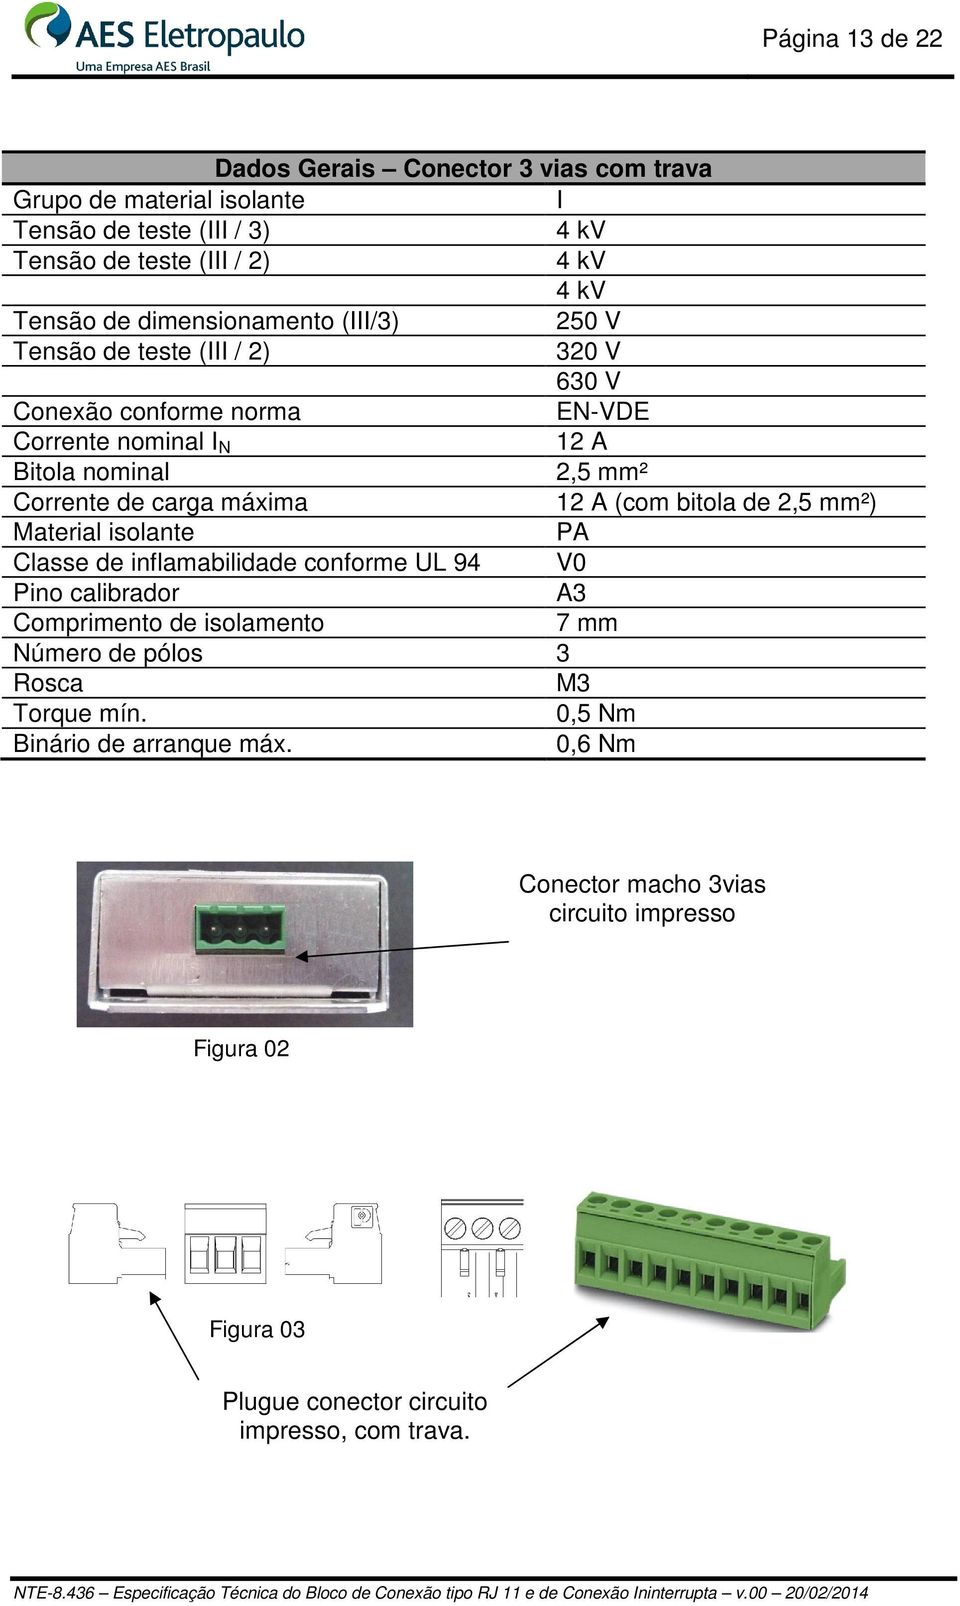 máxima 12 A (com bitola de 2,5 mm²) Material isolante PA Classe de inflamabilidade conforme UL 94 V0 Pino calibrador A3 Comprimento de isolamento 7 mm Número de